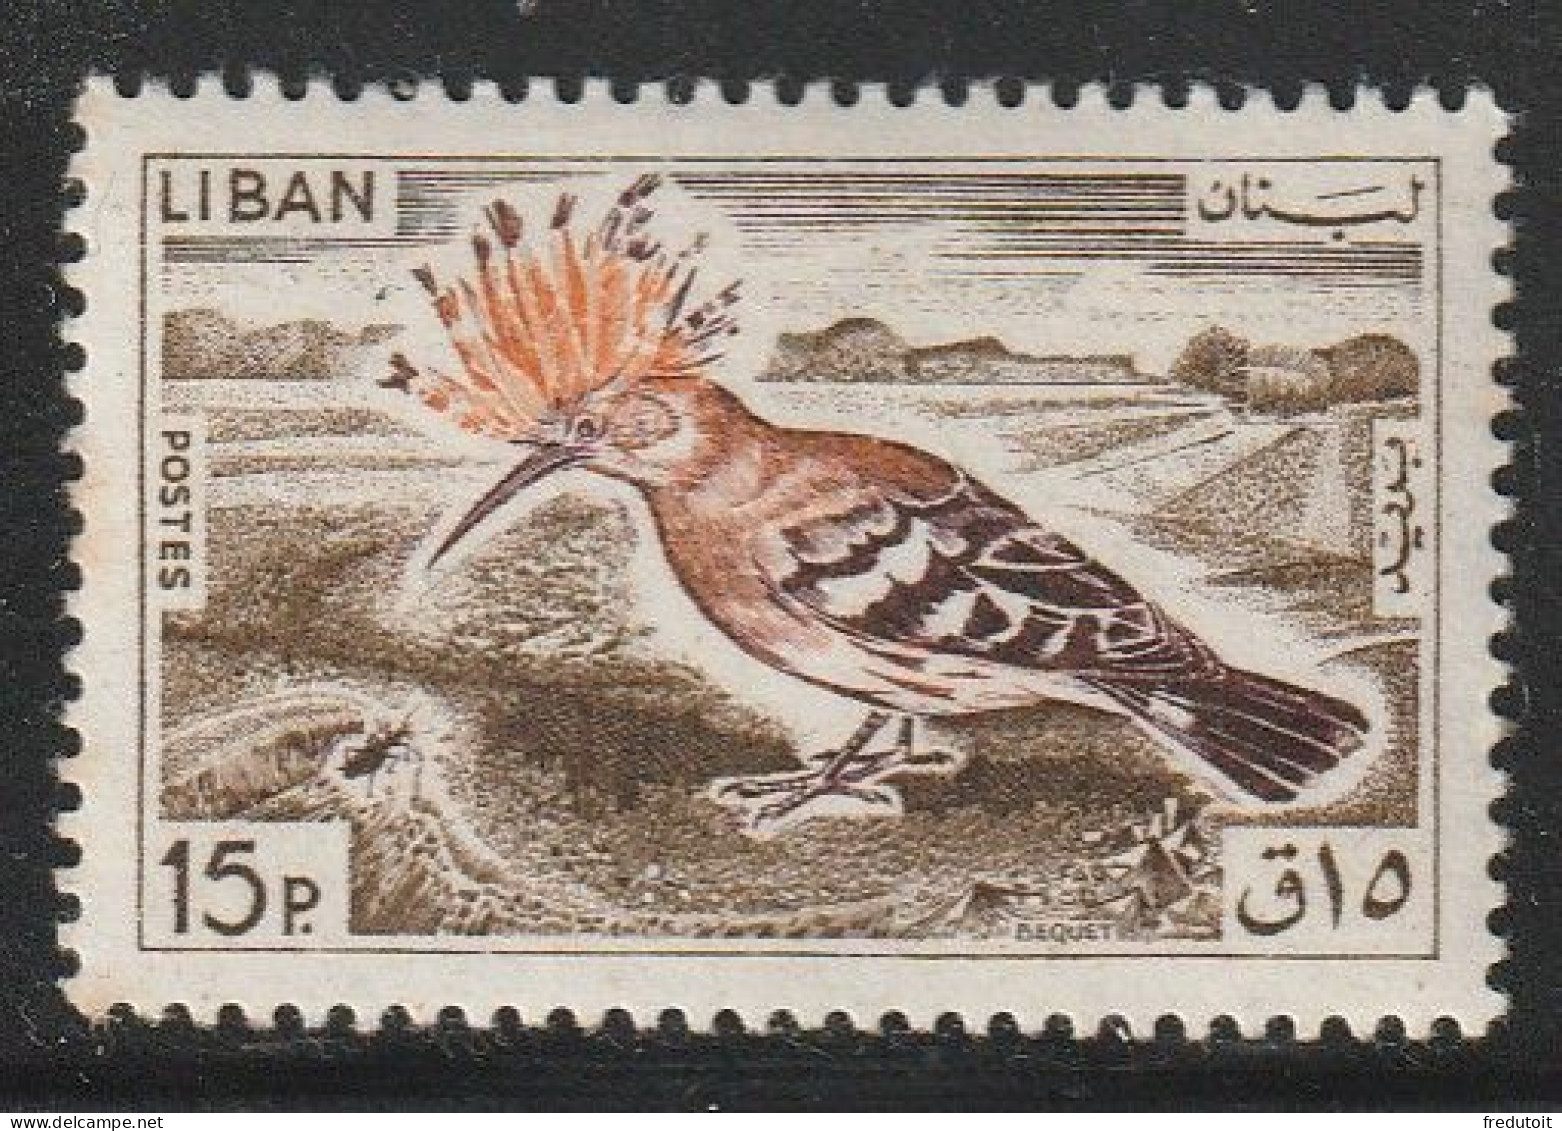 LIBAN - N°252 ** (1965) Oiseau - Lebanon